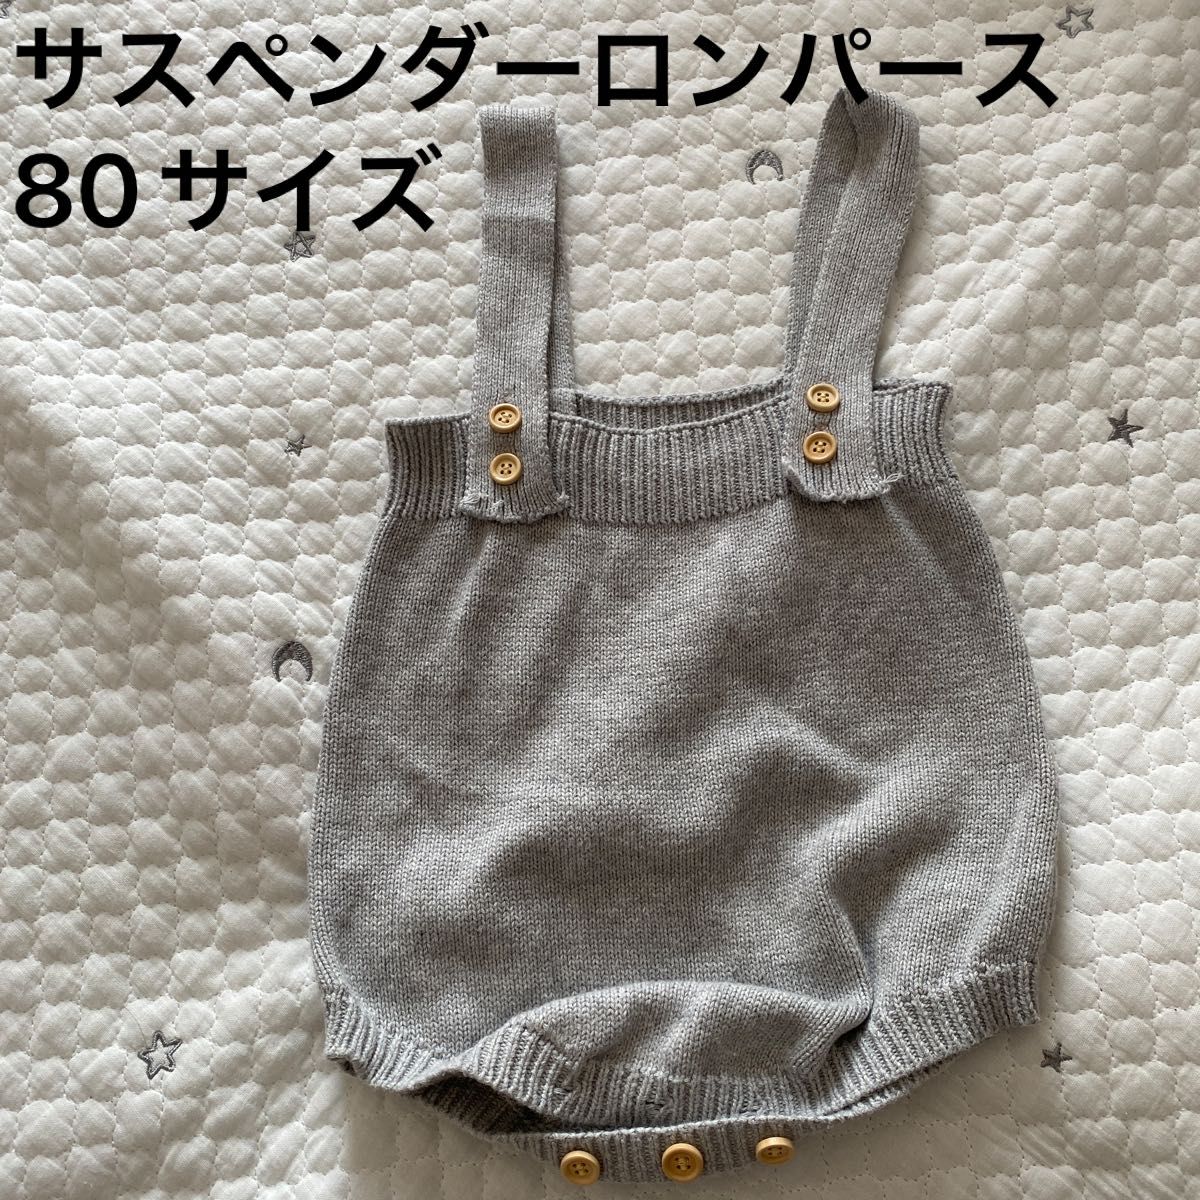 韓国子供服 ノーブランド サスペンダー ロンパース サロペット ベビー 赤ちゃん80サイズ